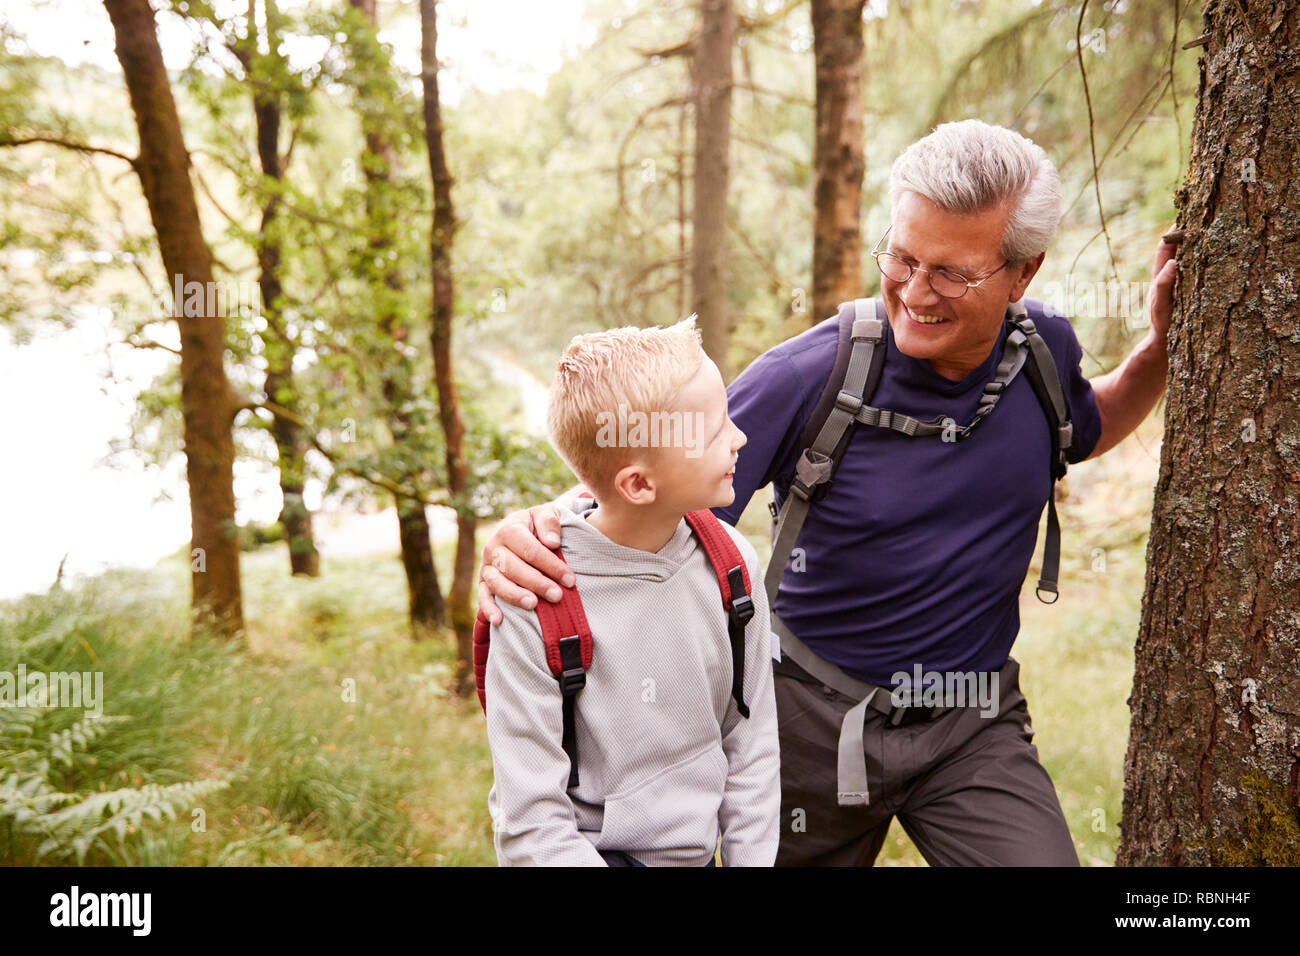 Grand-père et petit-fils de prendre une pause lors d'une randonnée ensemble dans une forêt, Close up, looking at each other Banque D'Images